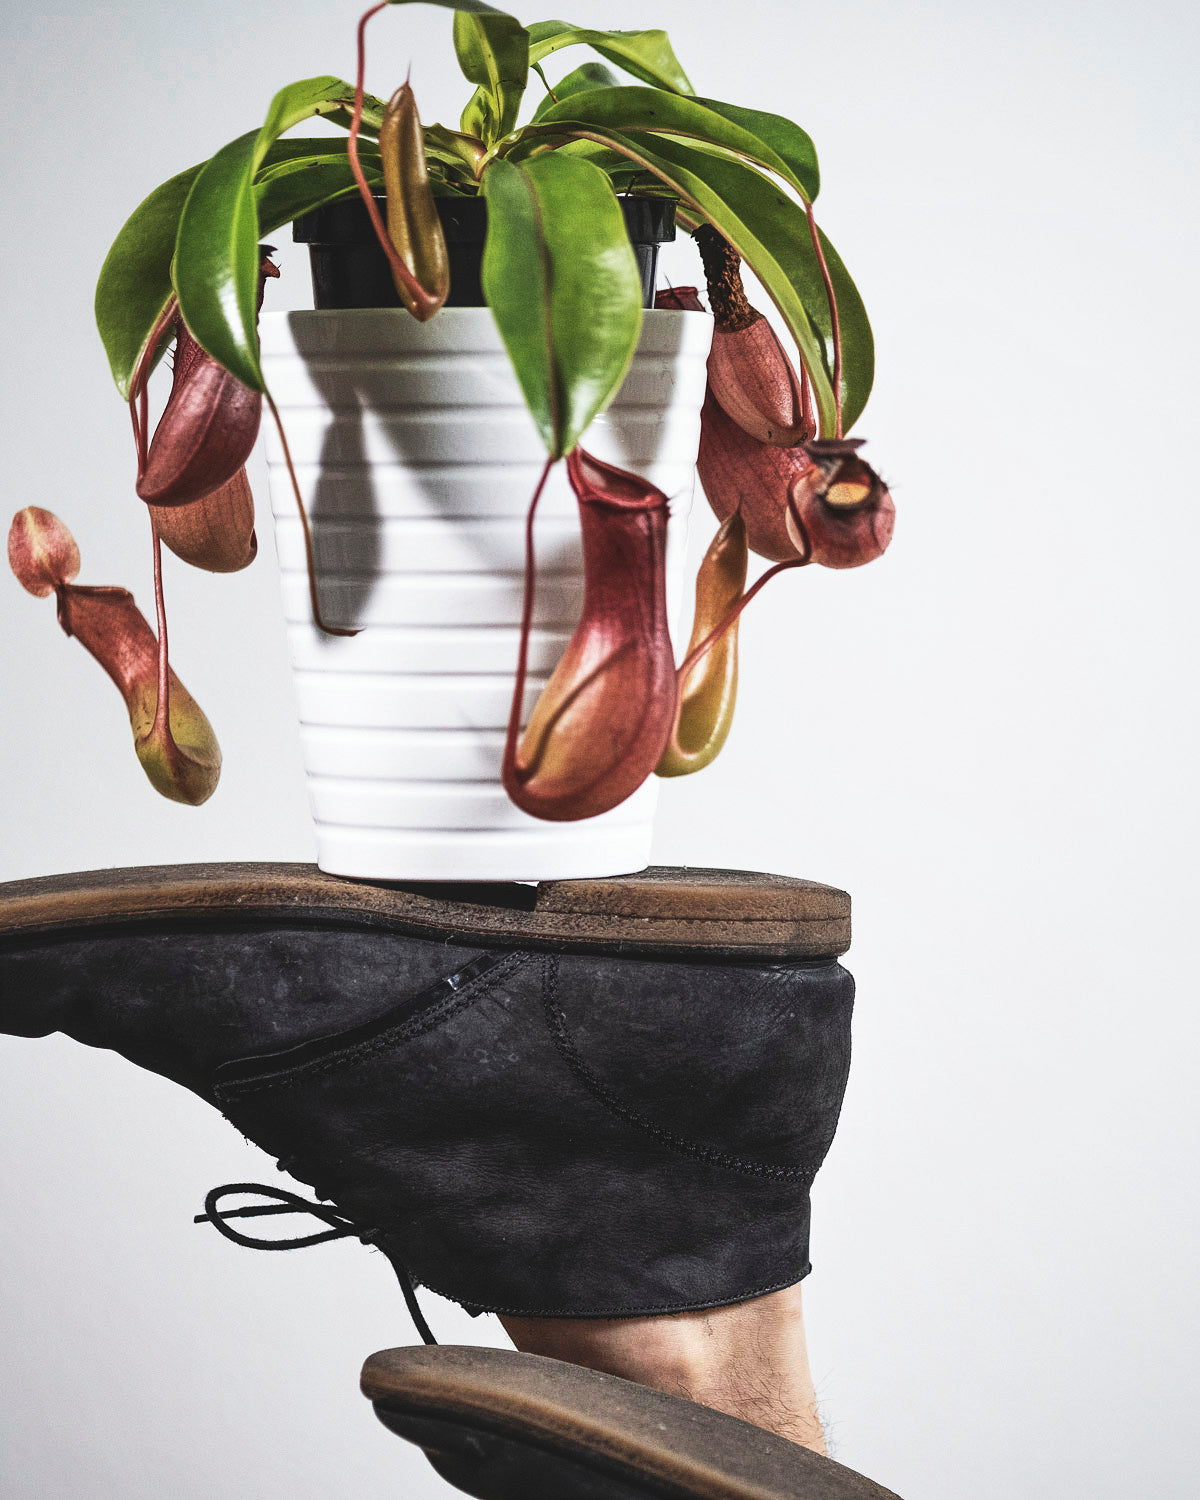 Kannenpflanze in weissem Topf auf dem Schuh balanciert